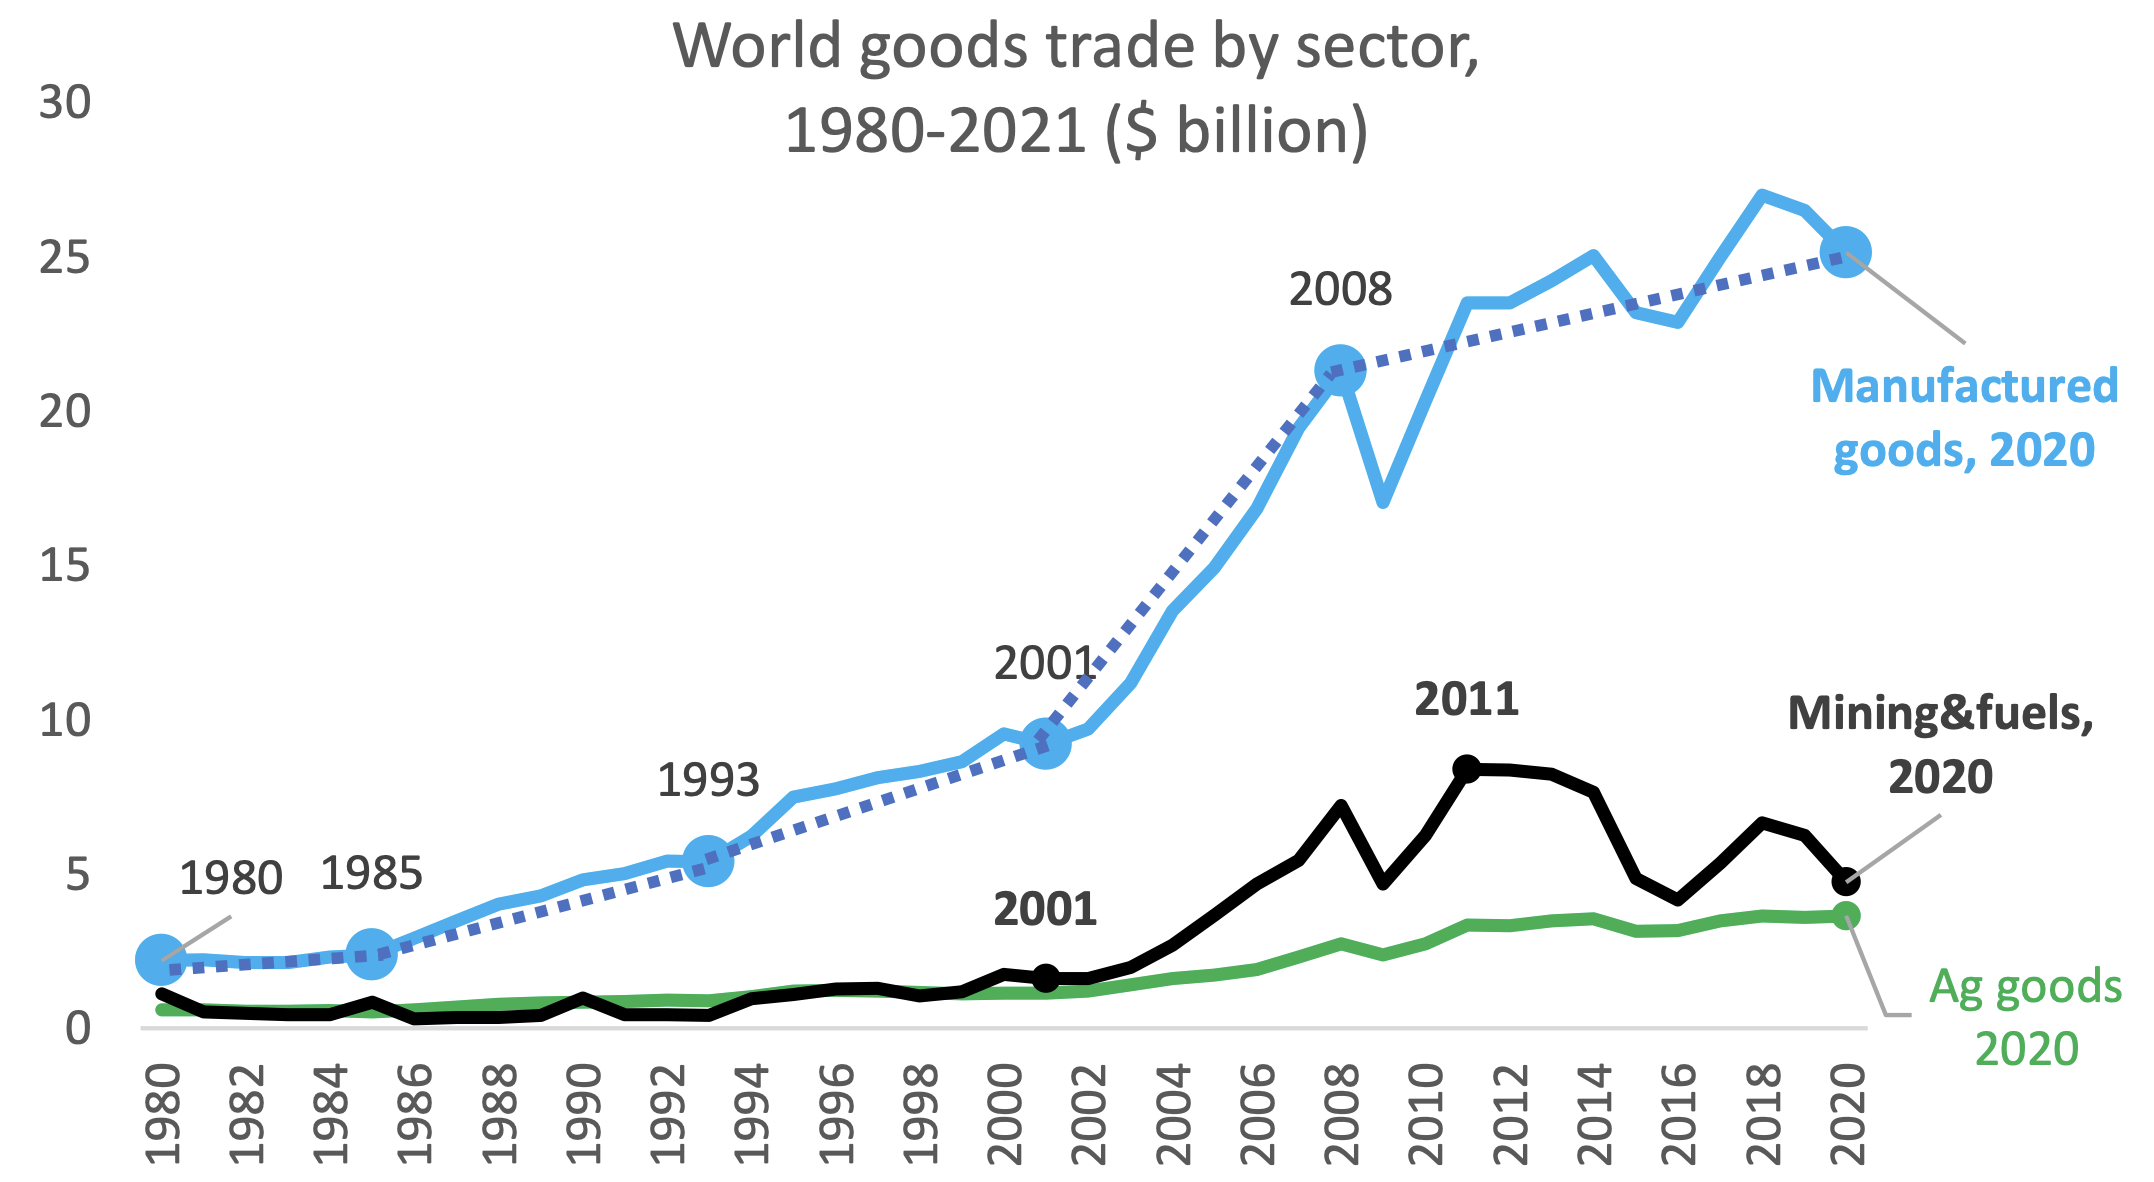 图4 1980-2020年分行业的世界货物贸易价值(10亿美元)